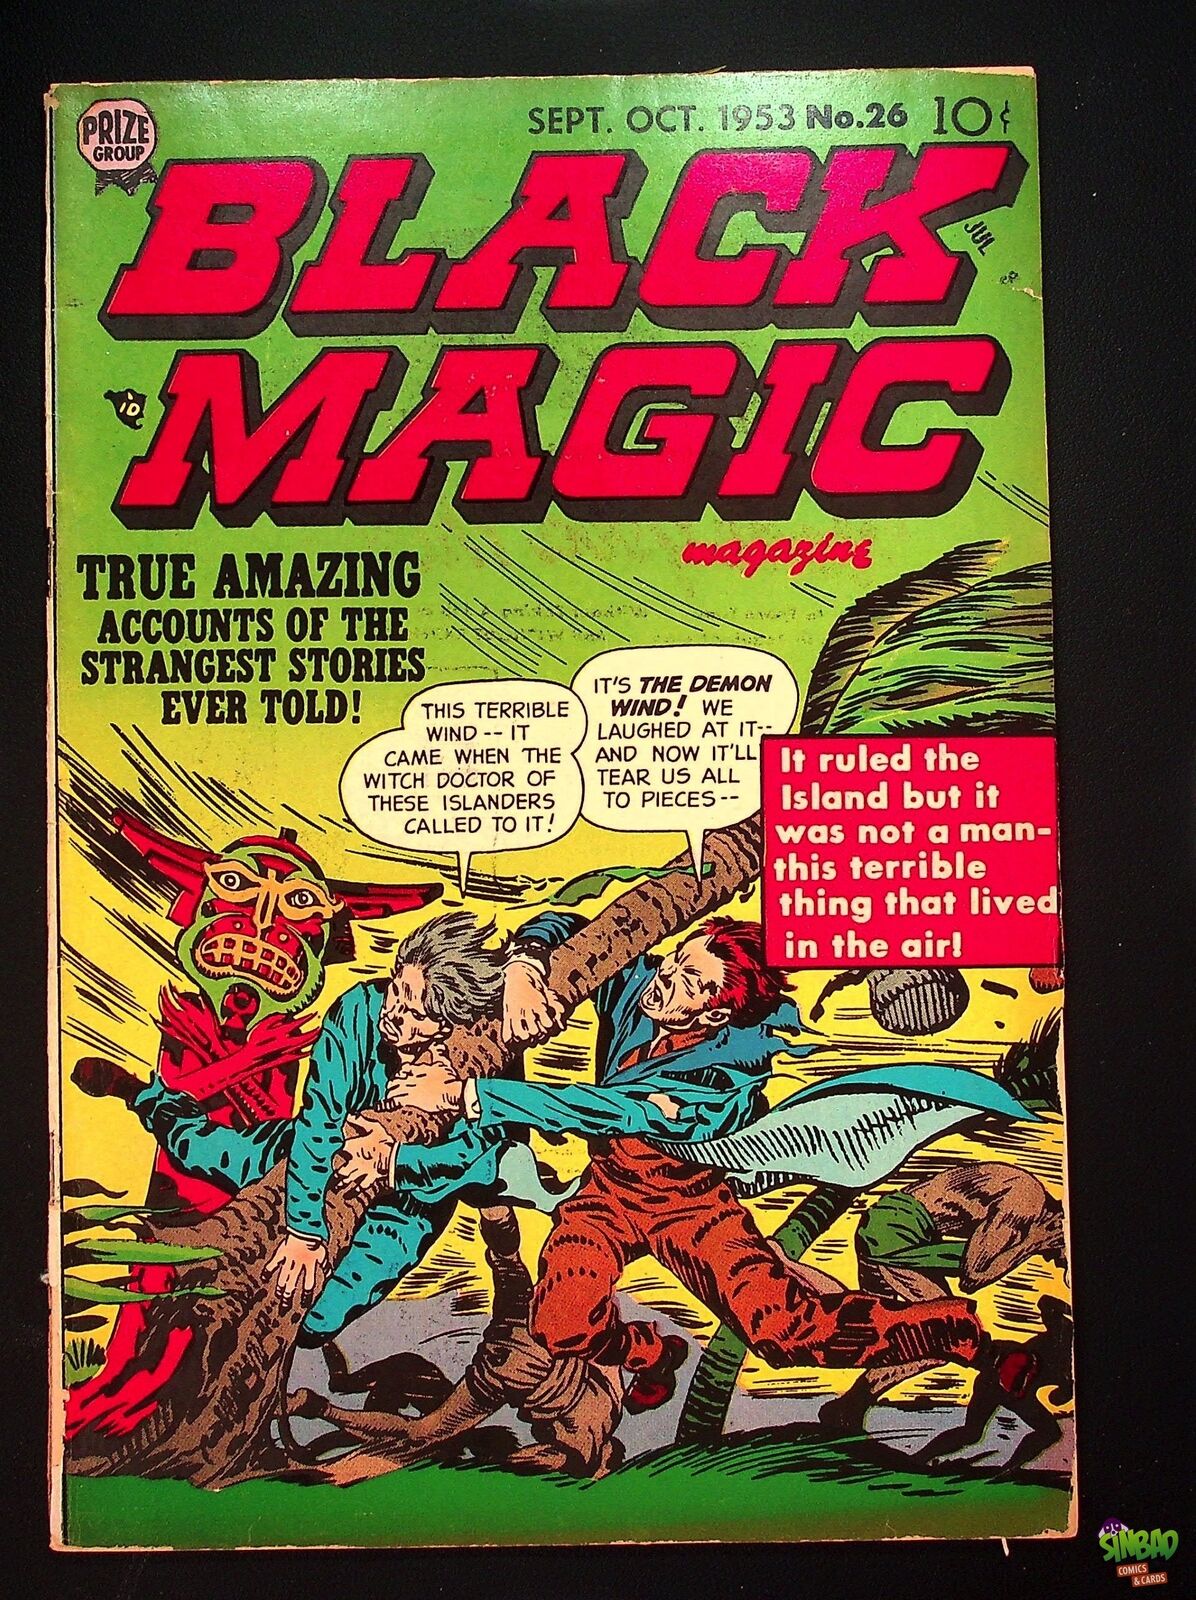 Black Magic, Vol. 4 2